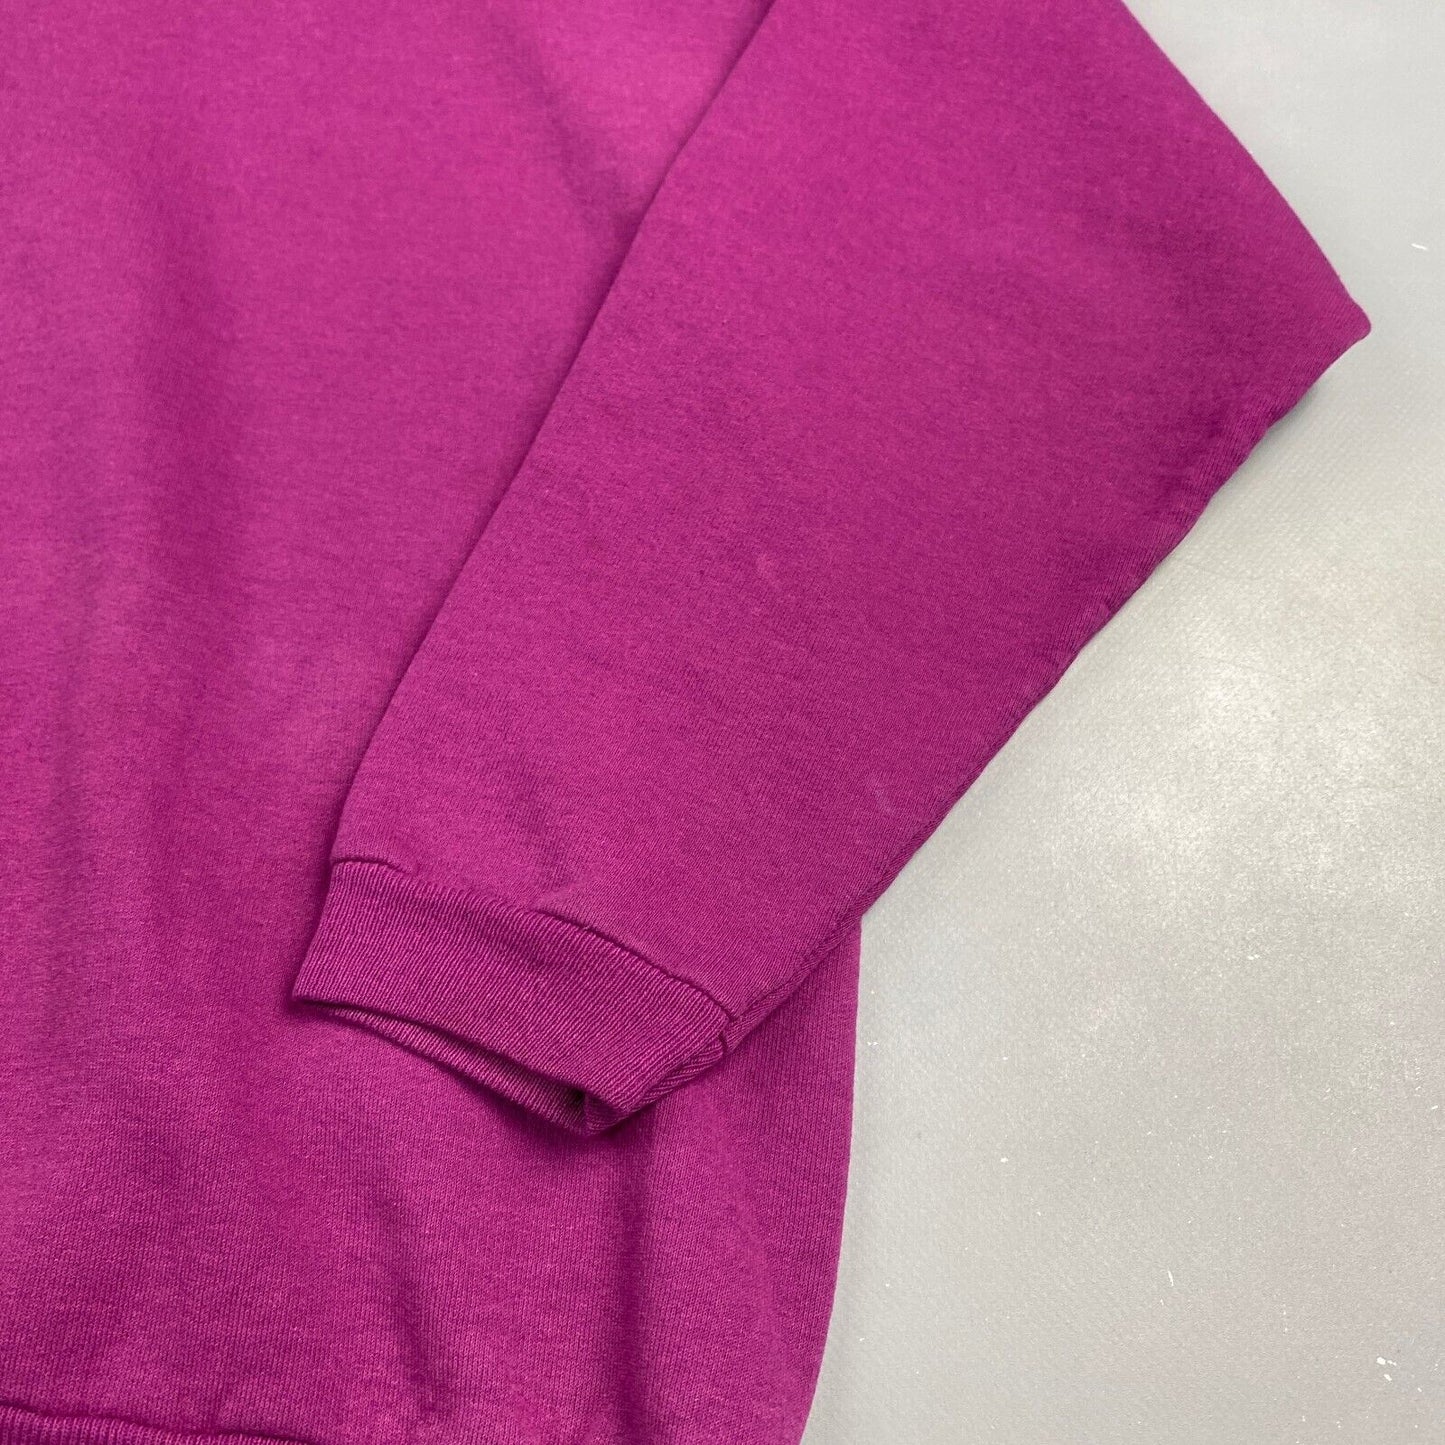 VINTAGE 90s Hanes Blank Purple Crewneck Sweater sz Large Adult